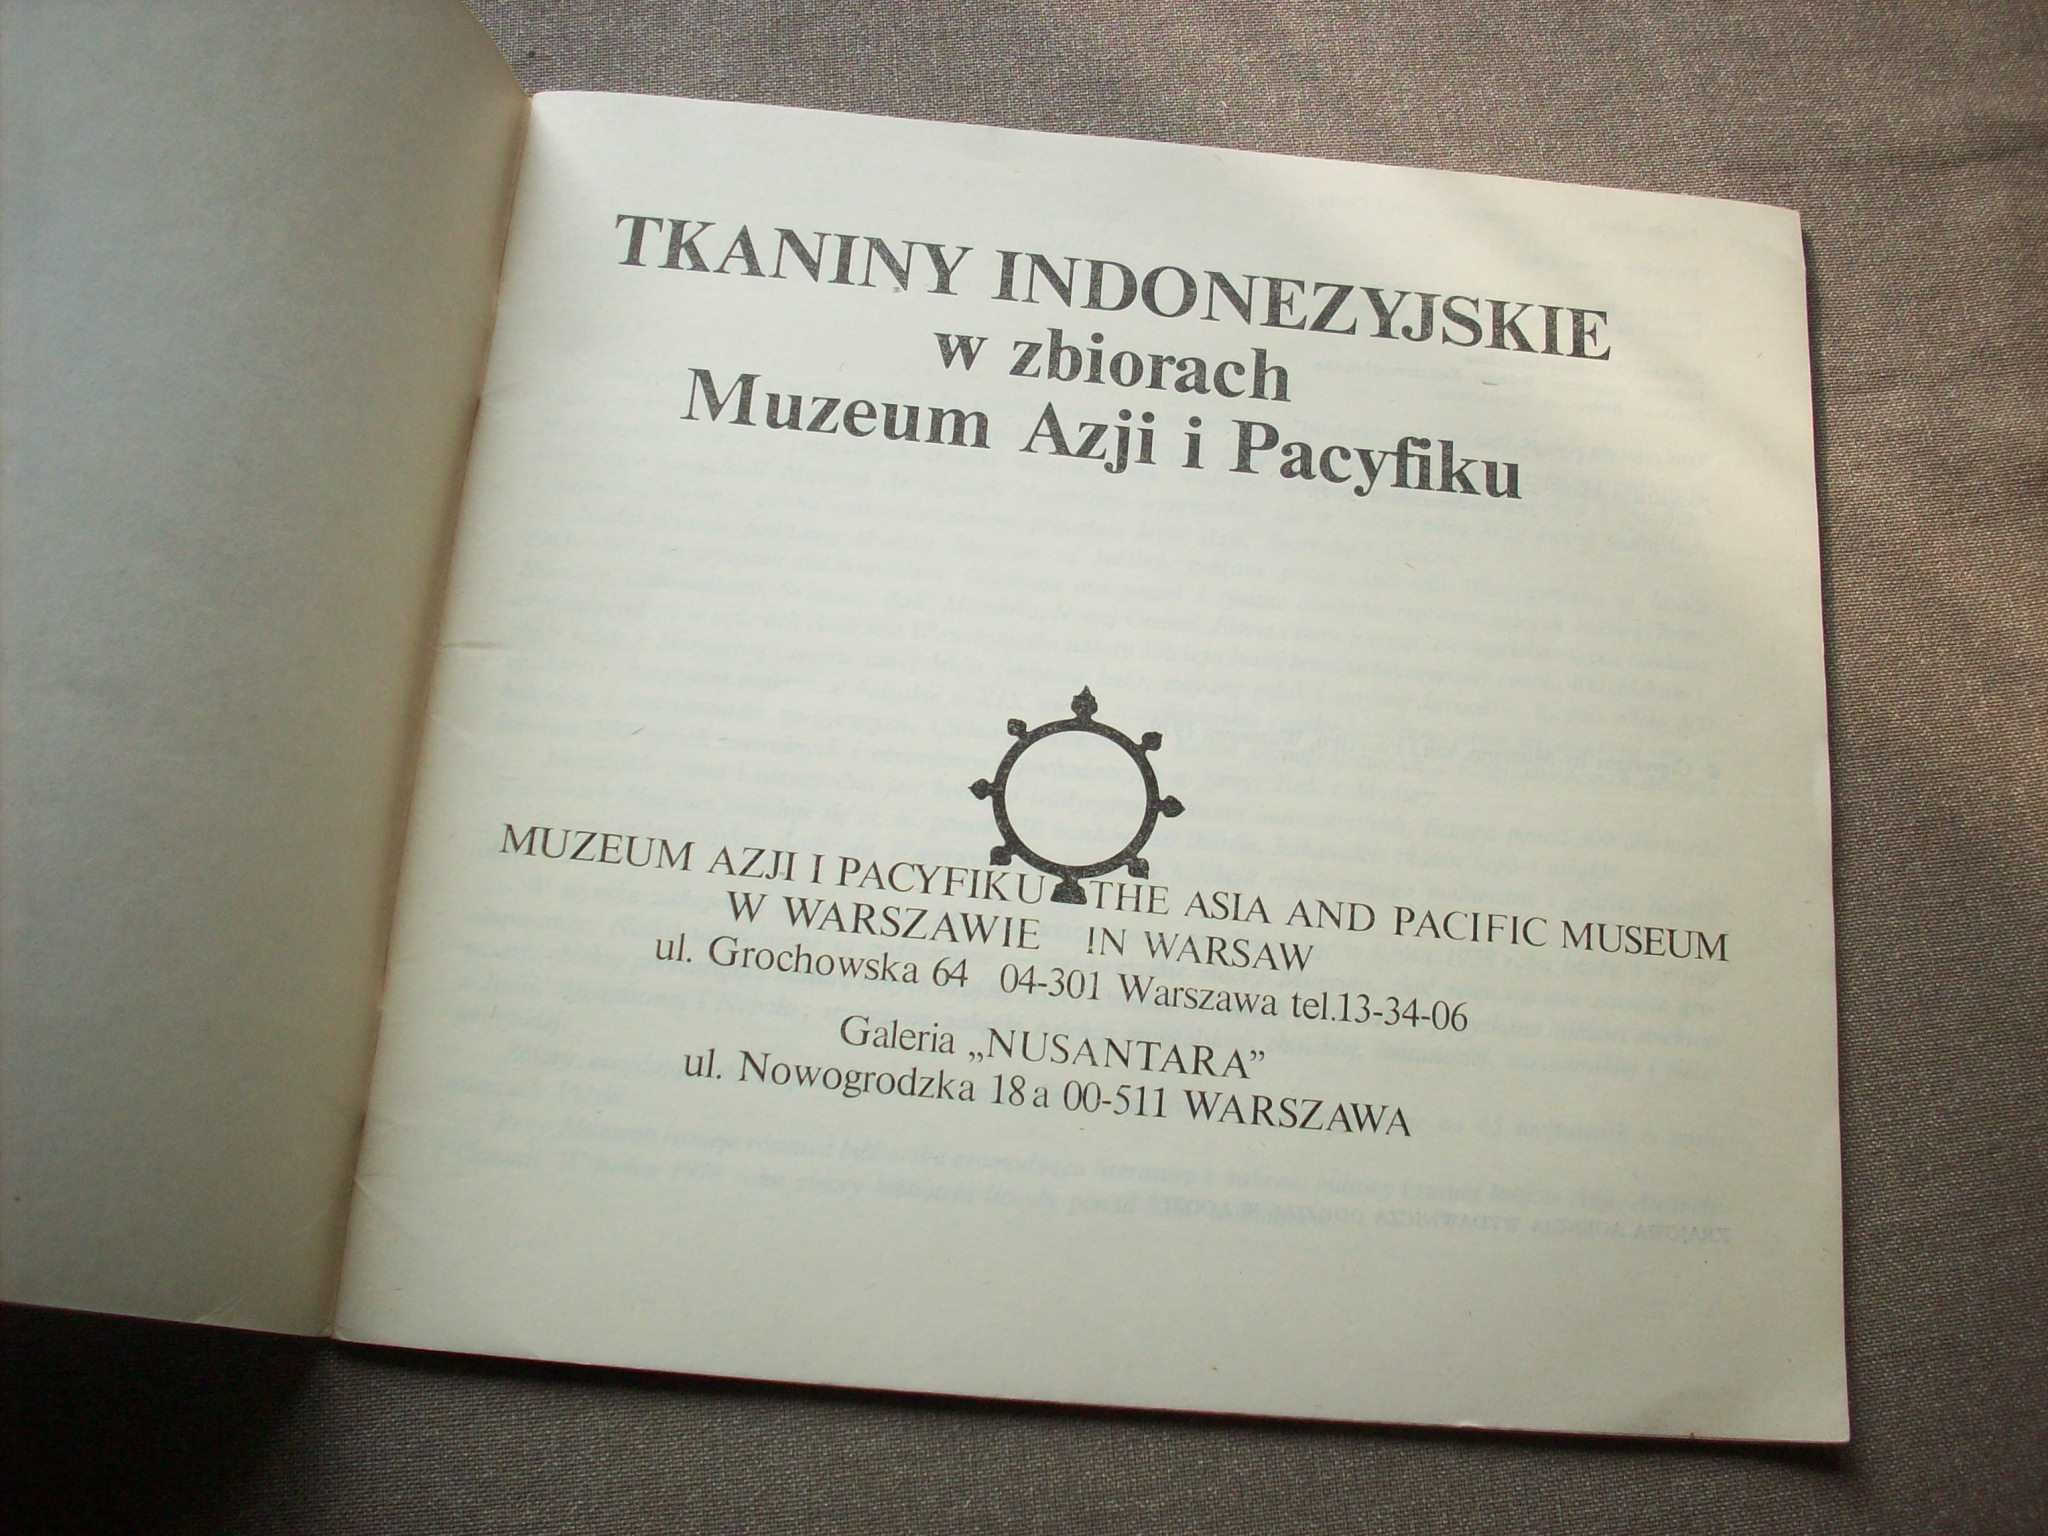 Tkaniny indonezyjskie w zbiorach Muzeum Azji i Pacyfiku.